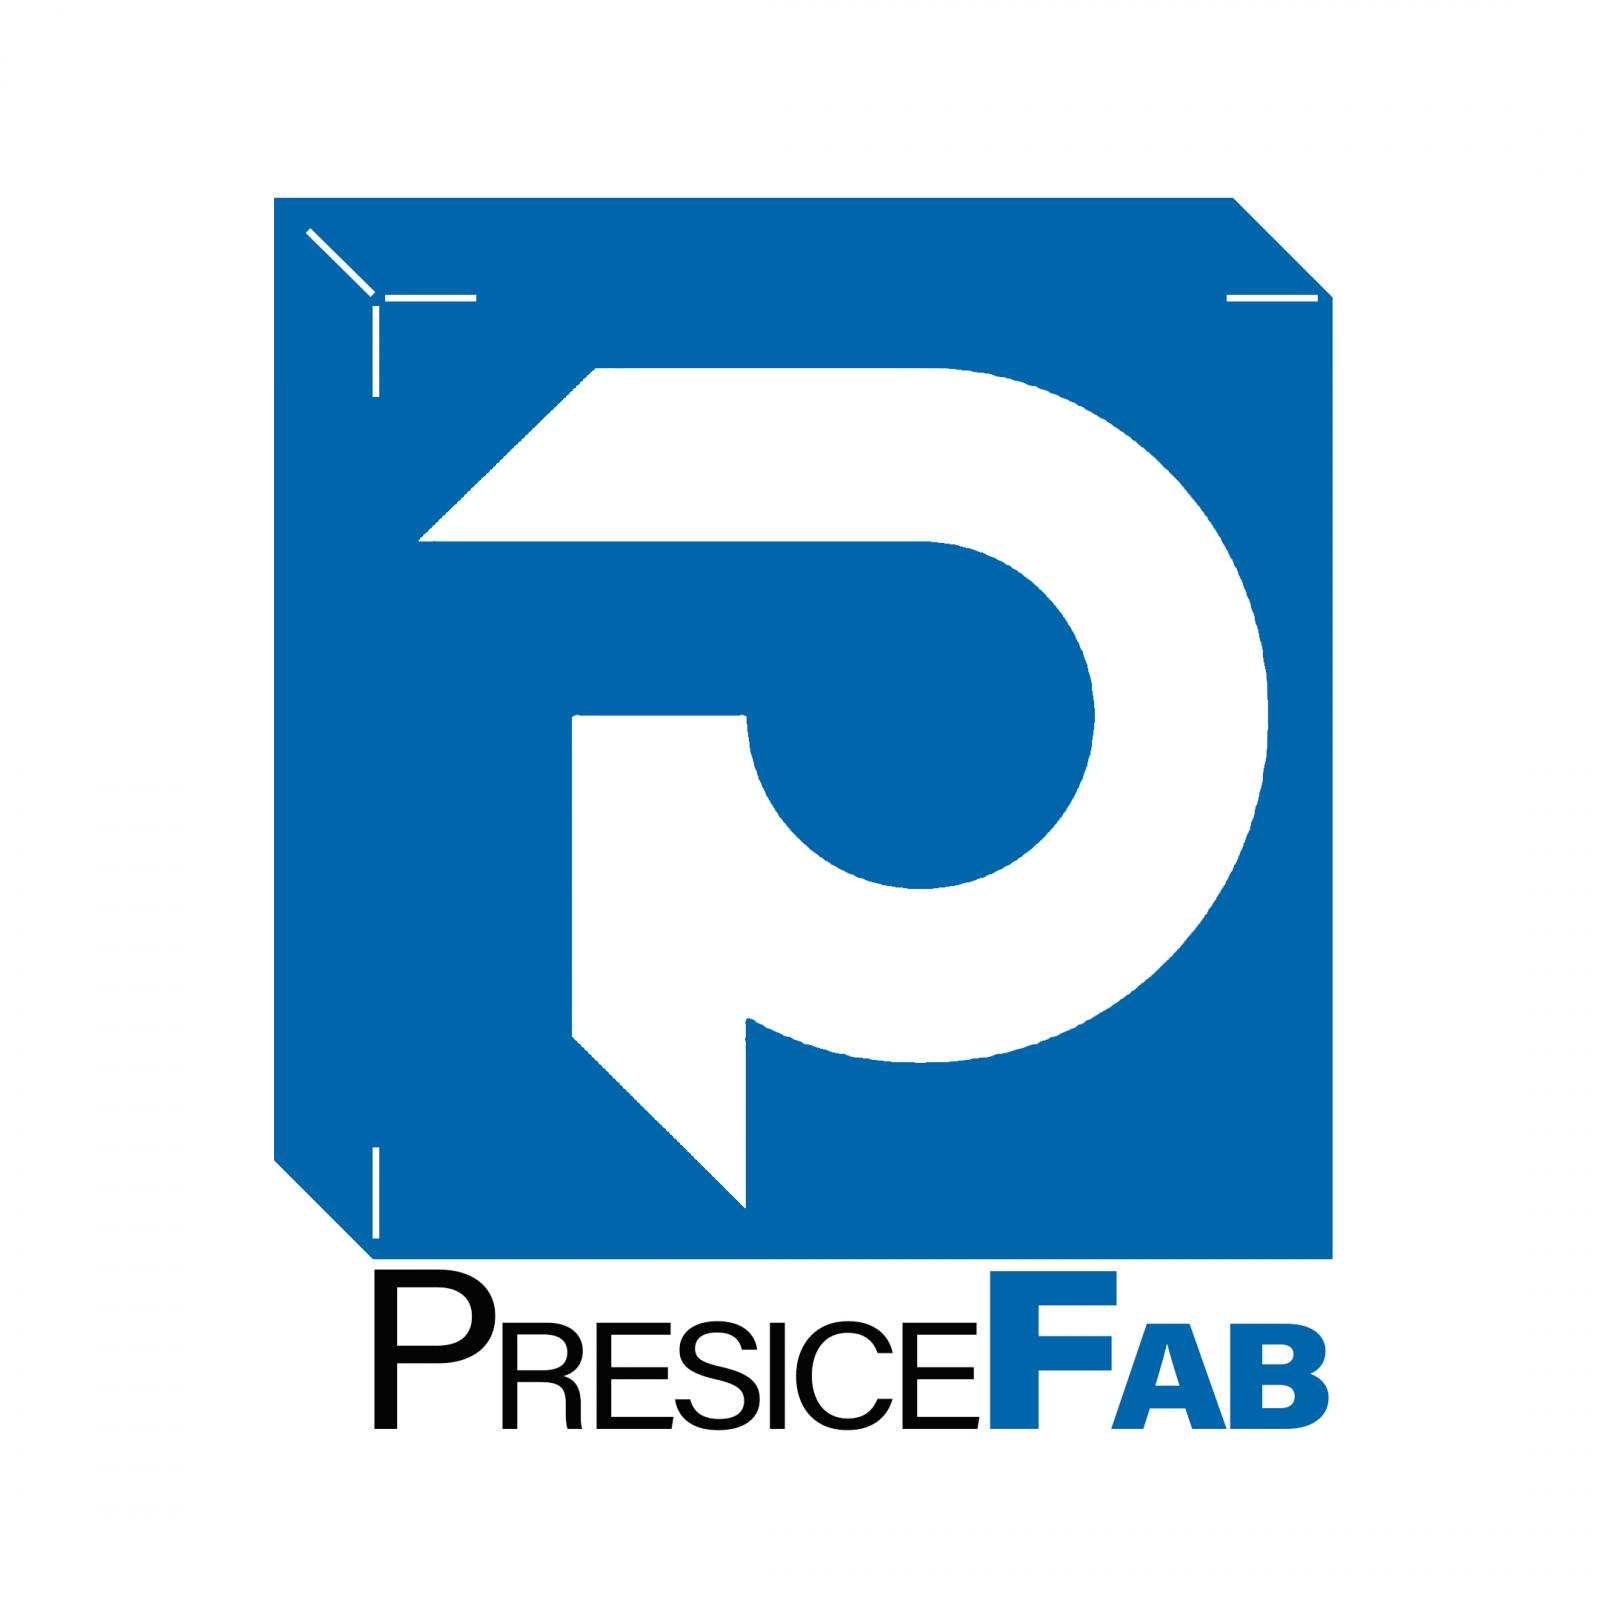 Main Logo for Precise Fab